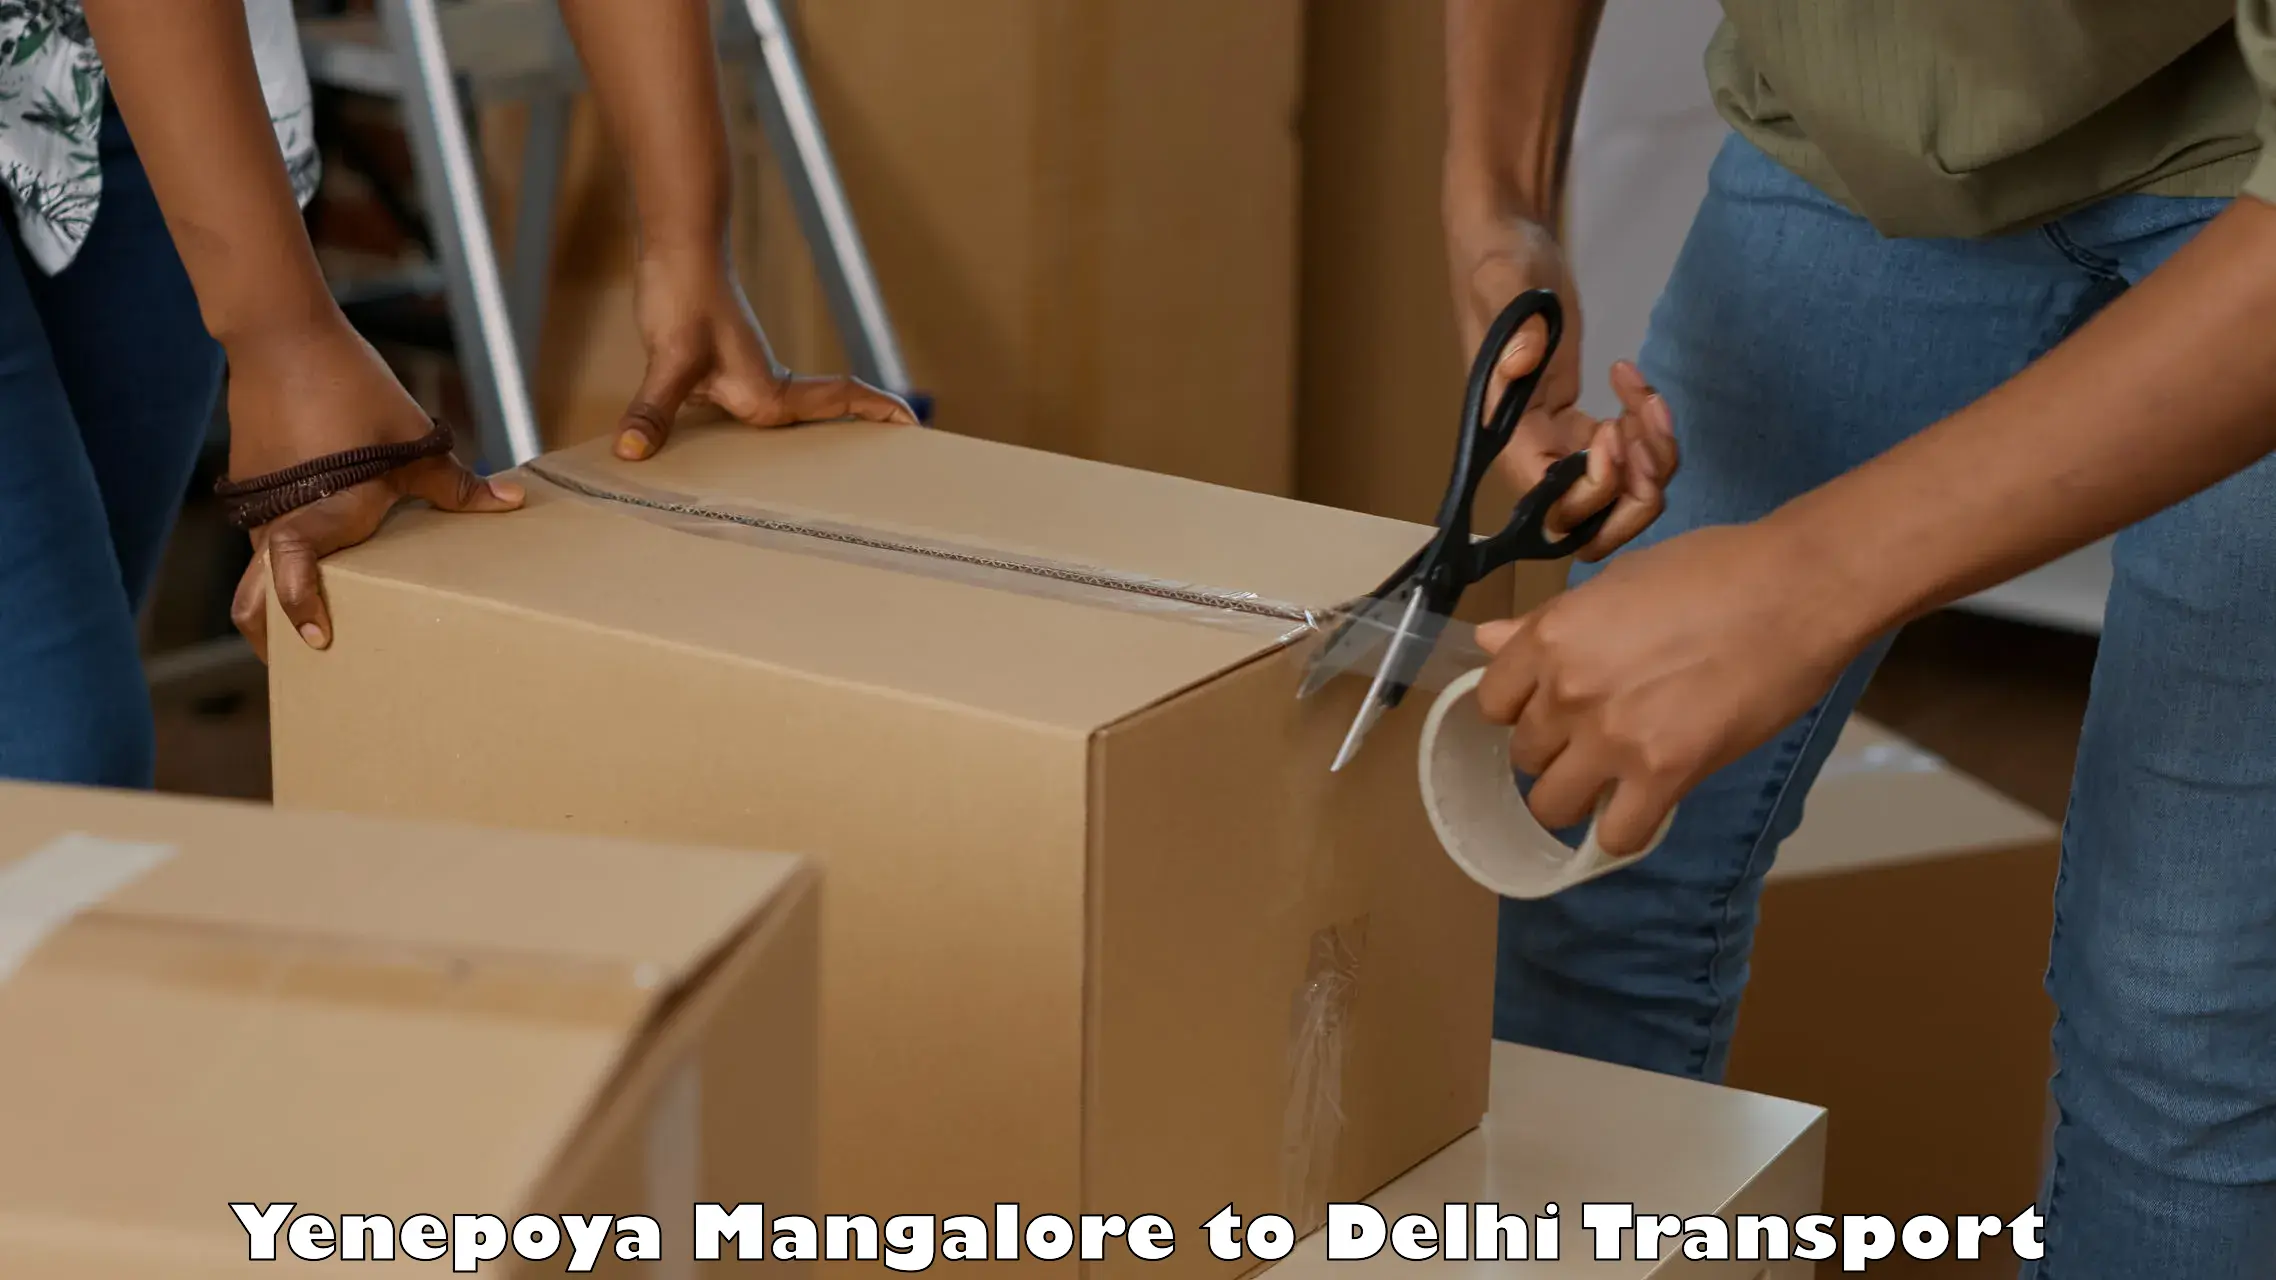 Goods delivery service Yenepoya Mangalore to IIT Delhi